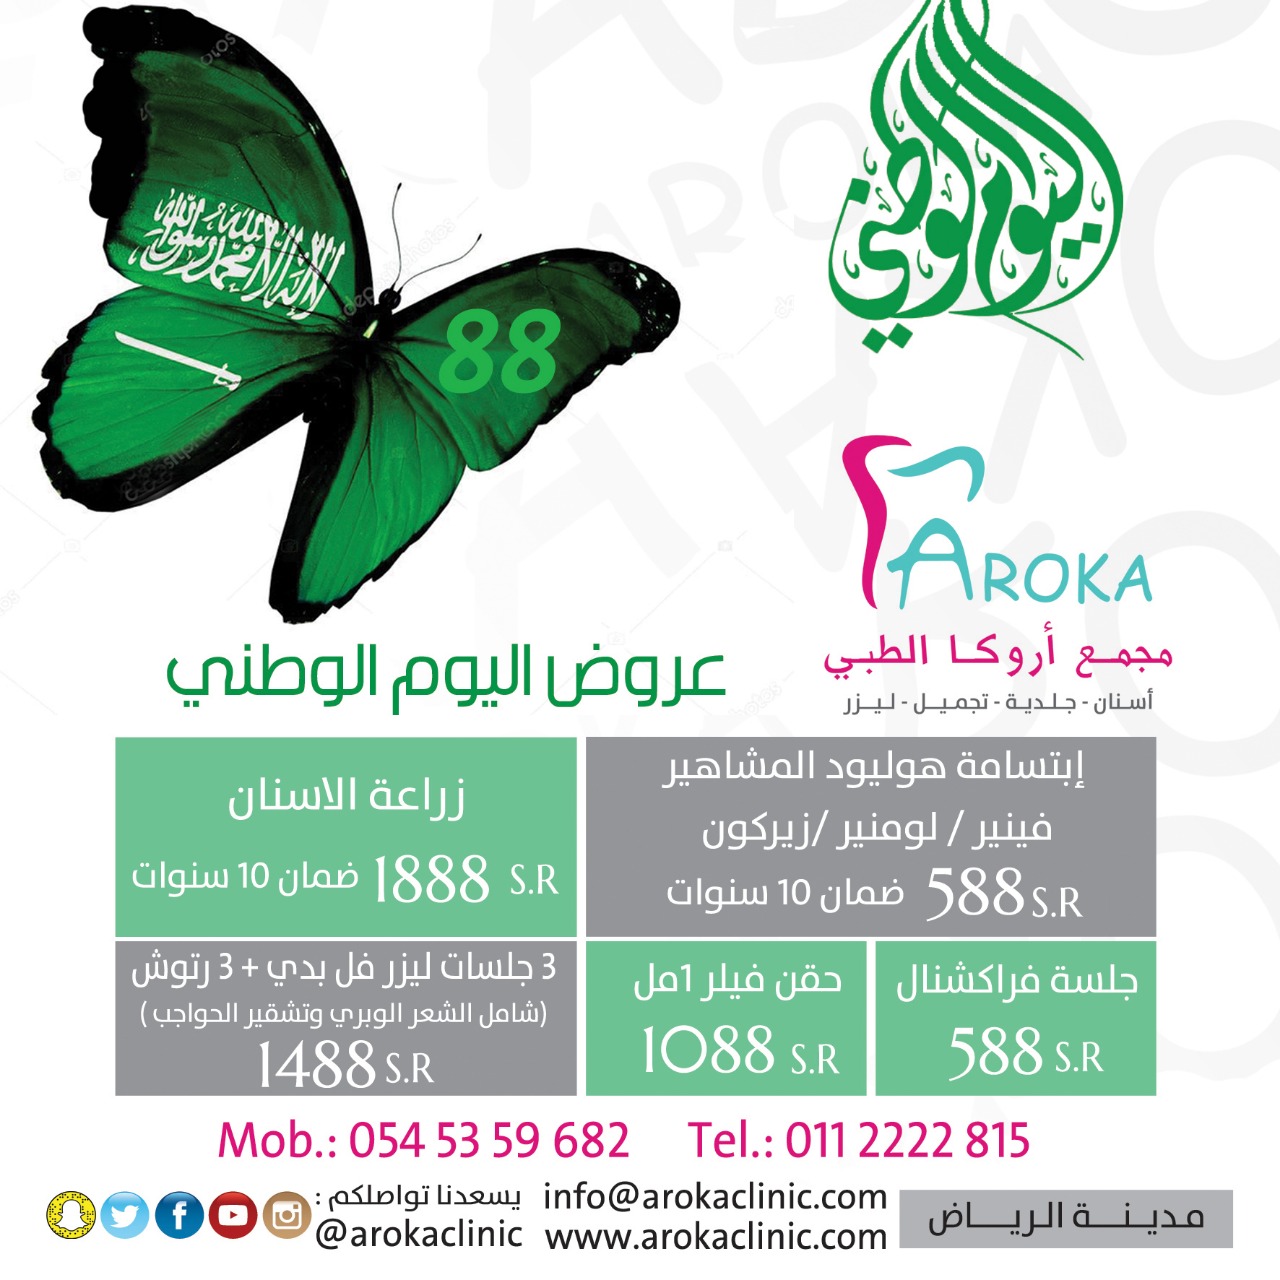 عيادة اروكا لعلاج تسوس الاسنان بالرياض 0112222815 عيادة أسنان وجلديه في الرياض P_1012420nr2